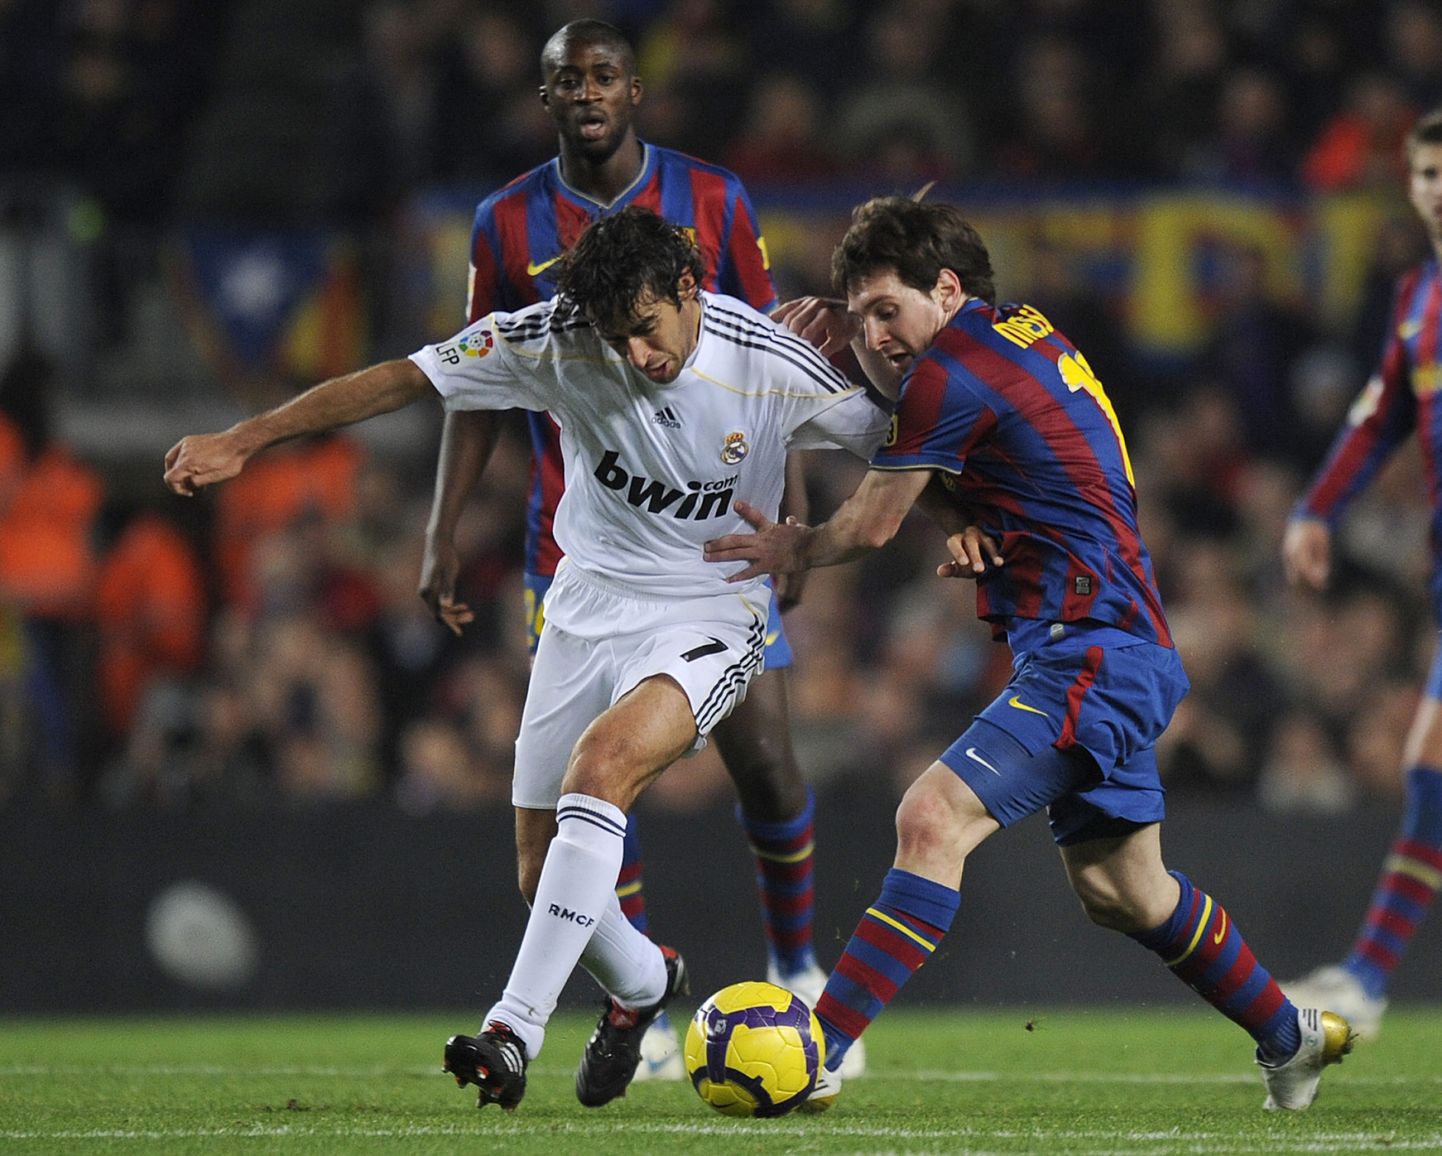 Lionel Messi võitlemas Madridi Reali number seitsmega. Enne Cristiano Ronaldot kandis seda särginumbrit legendaarne Raul.